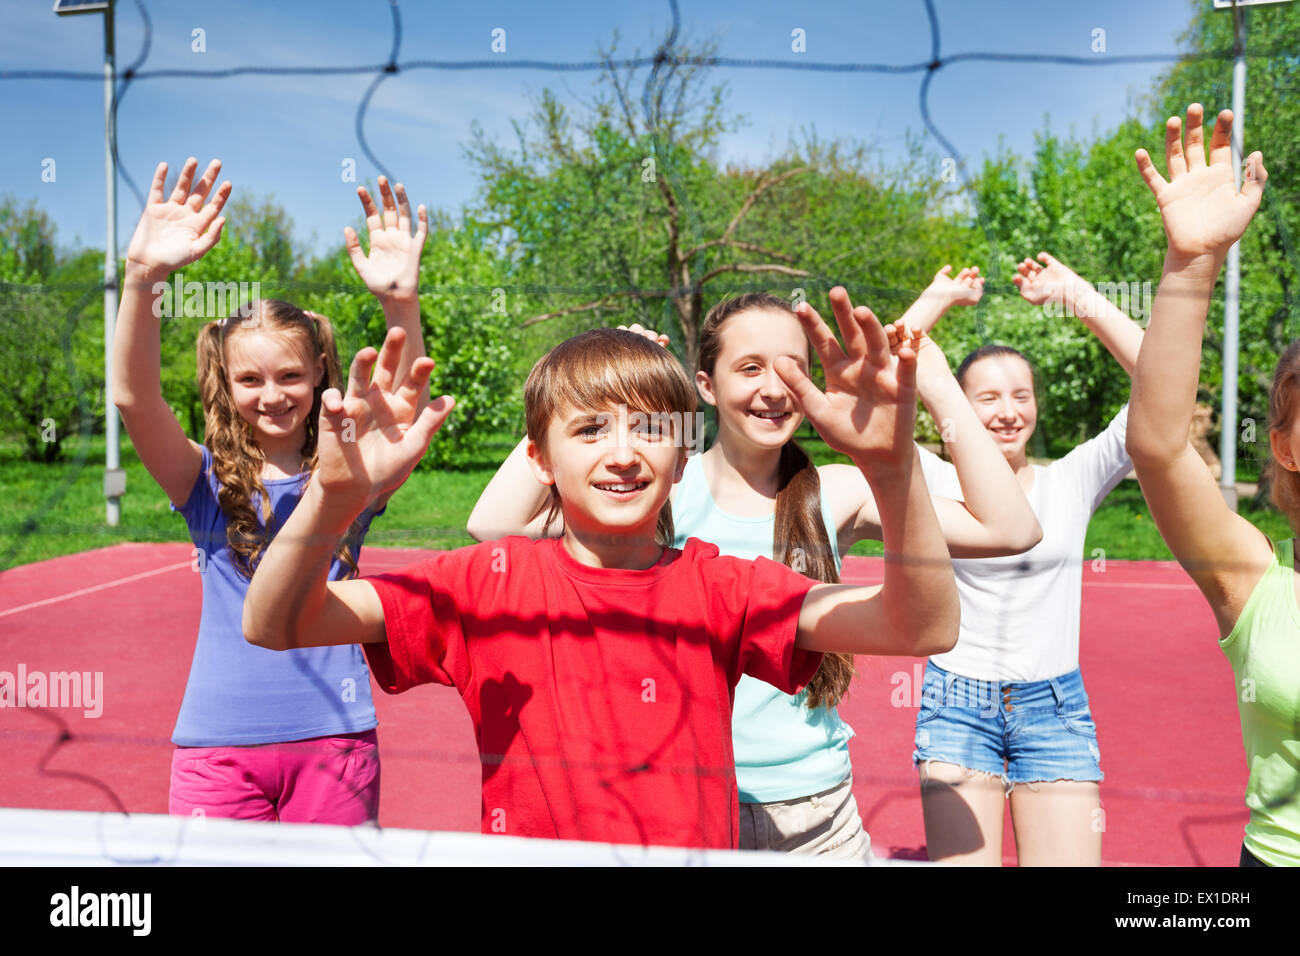 L'adolescence avec les bras jouer au volley-ball à proximité de l'internet Banque D'Images